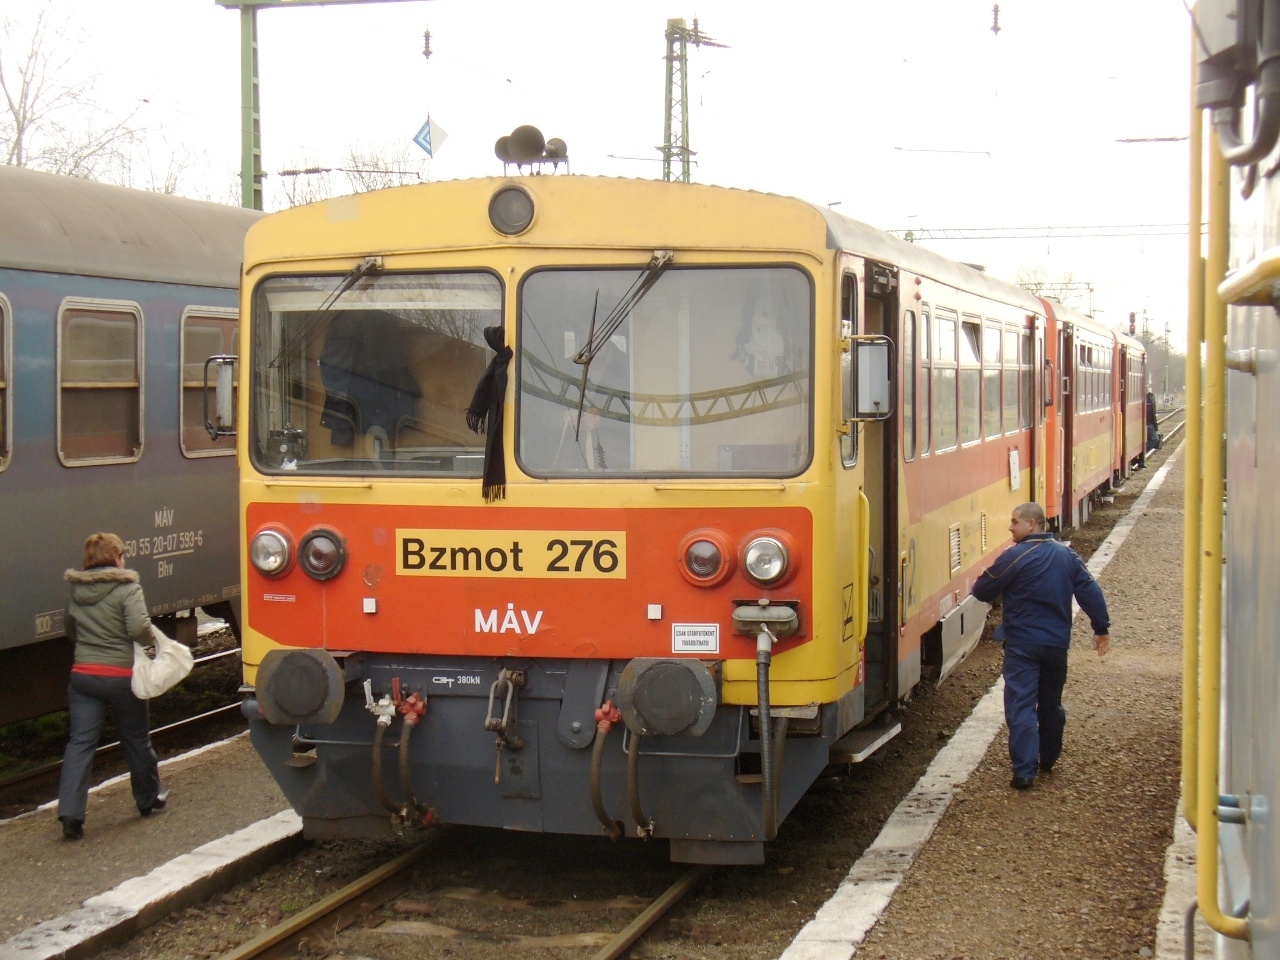 Gyászszalagos Bzmot 276 Fülöpszálláson. A csatlakozó vonatok és az idő továbbmegy, a Bzmot és a 152-es vonal itt marad. Örökre? (fotó: Csima György)